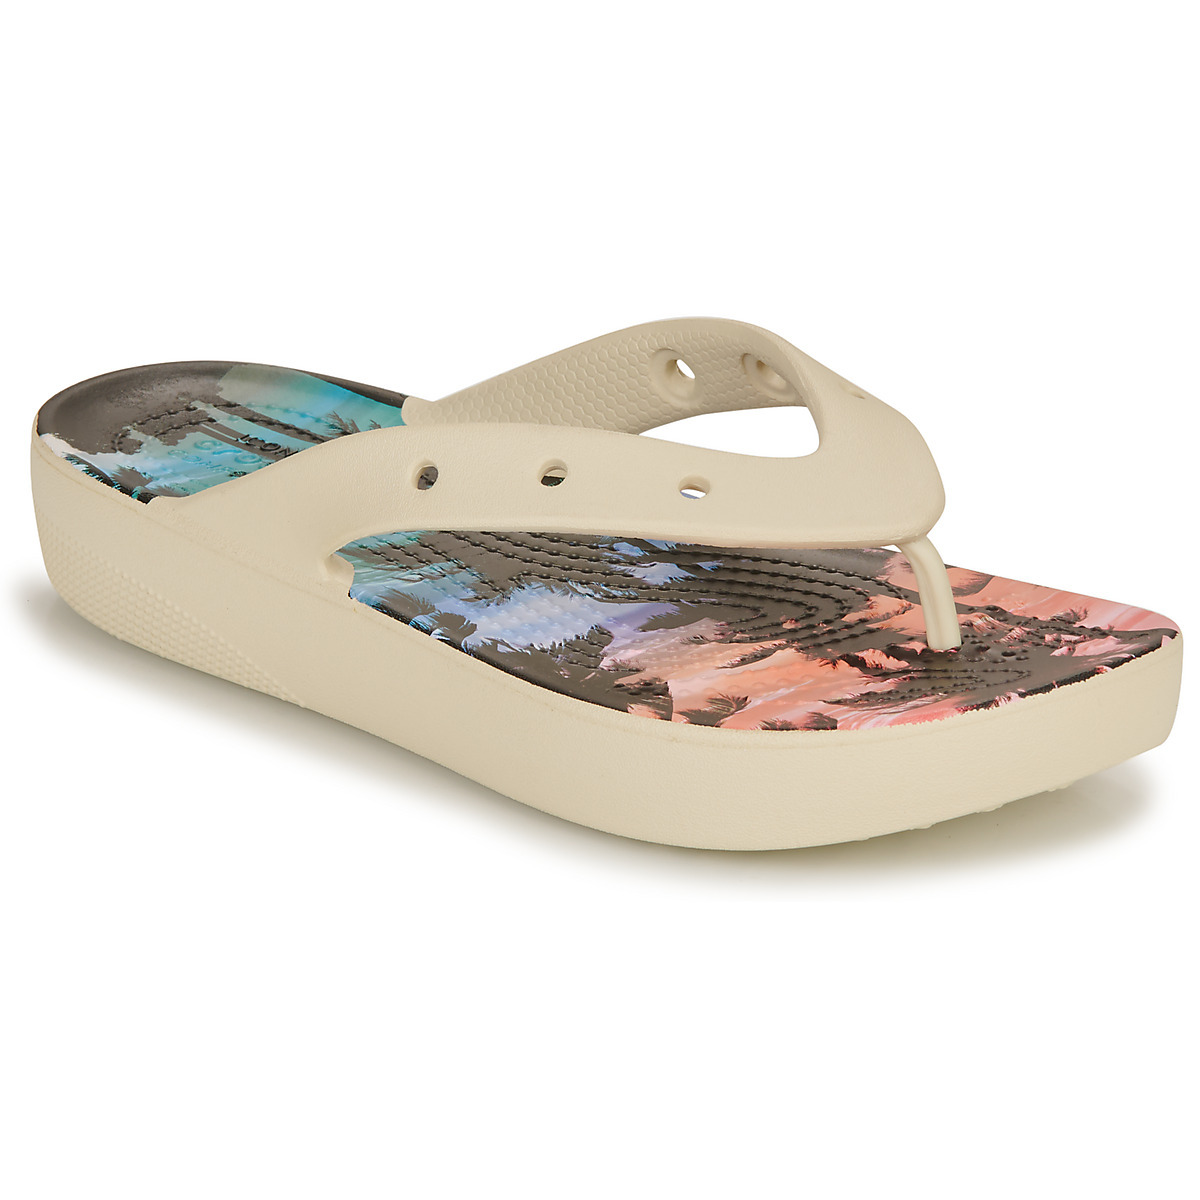 Spartoo - Women's Flip Flops in Multicolor - Crocs GOOFASH